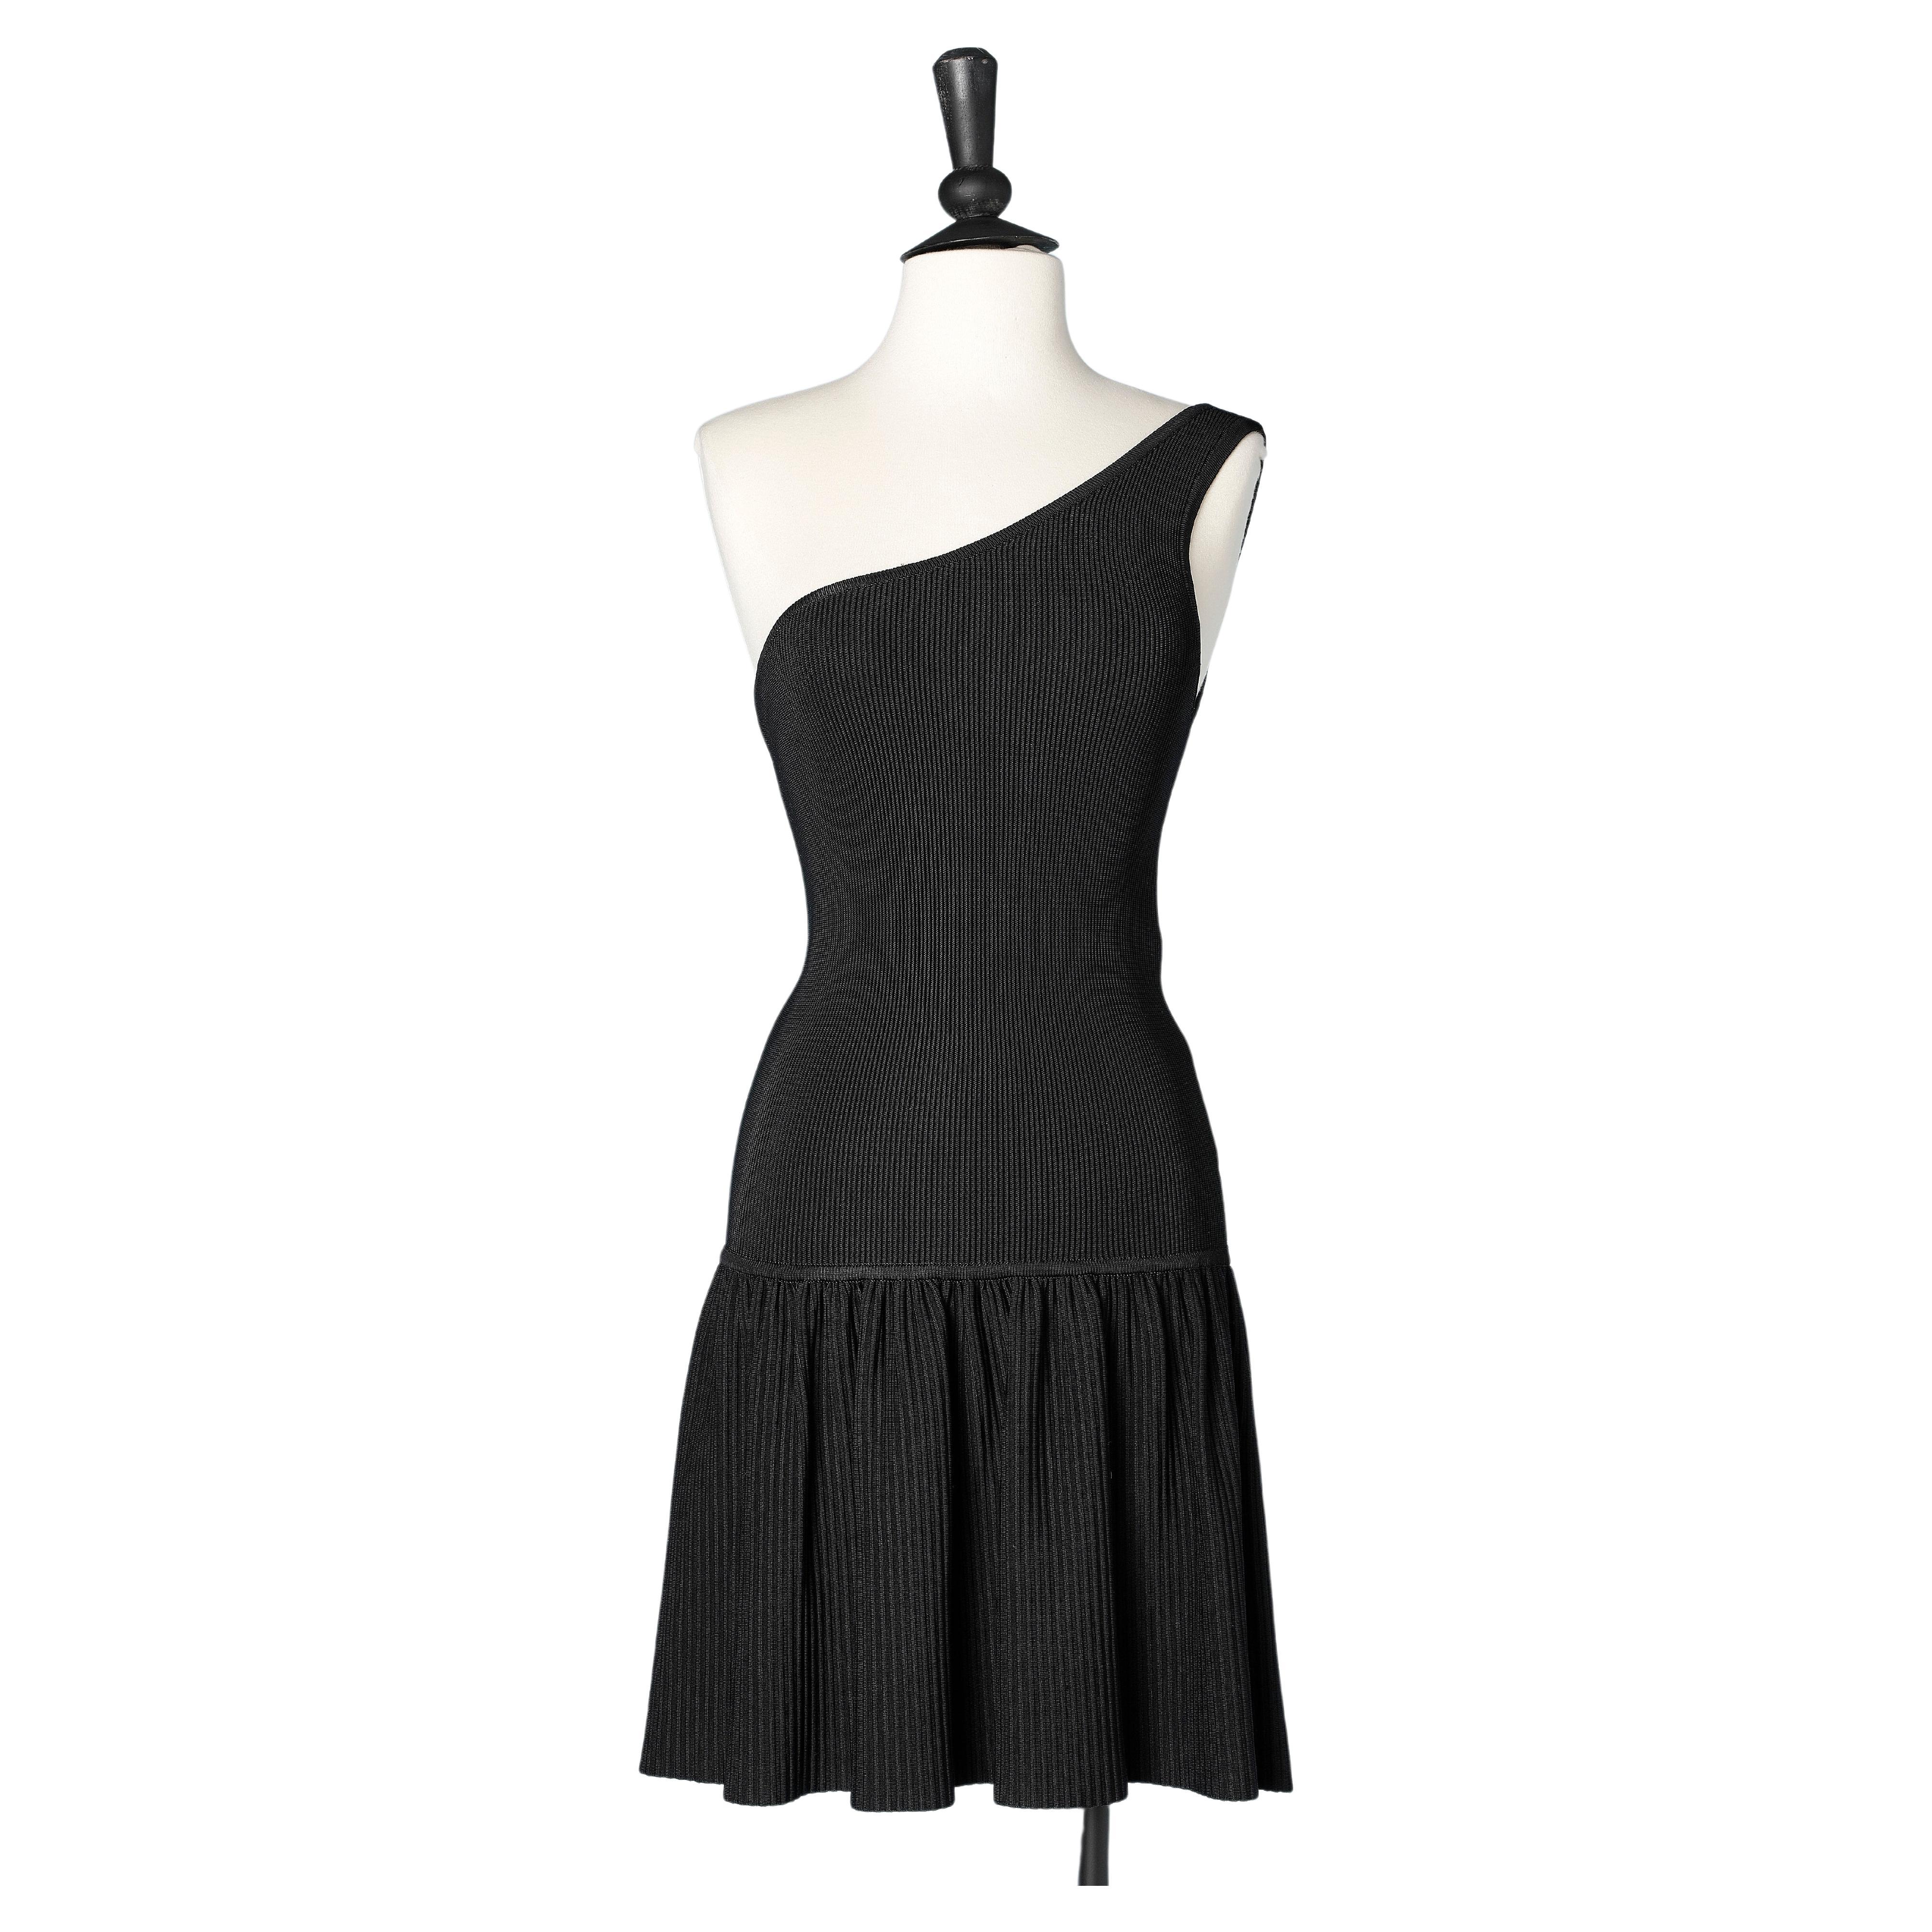 Black asymmetrical dress in rayon knit AlaÏa 